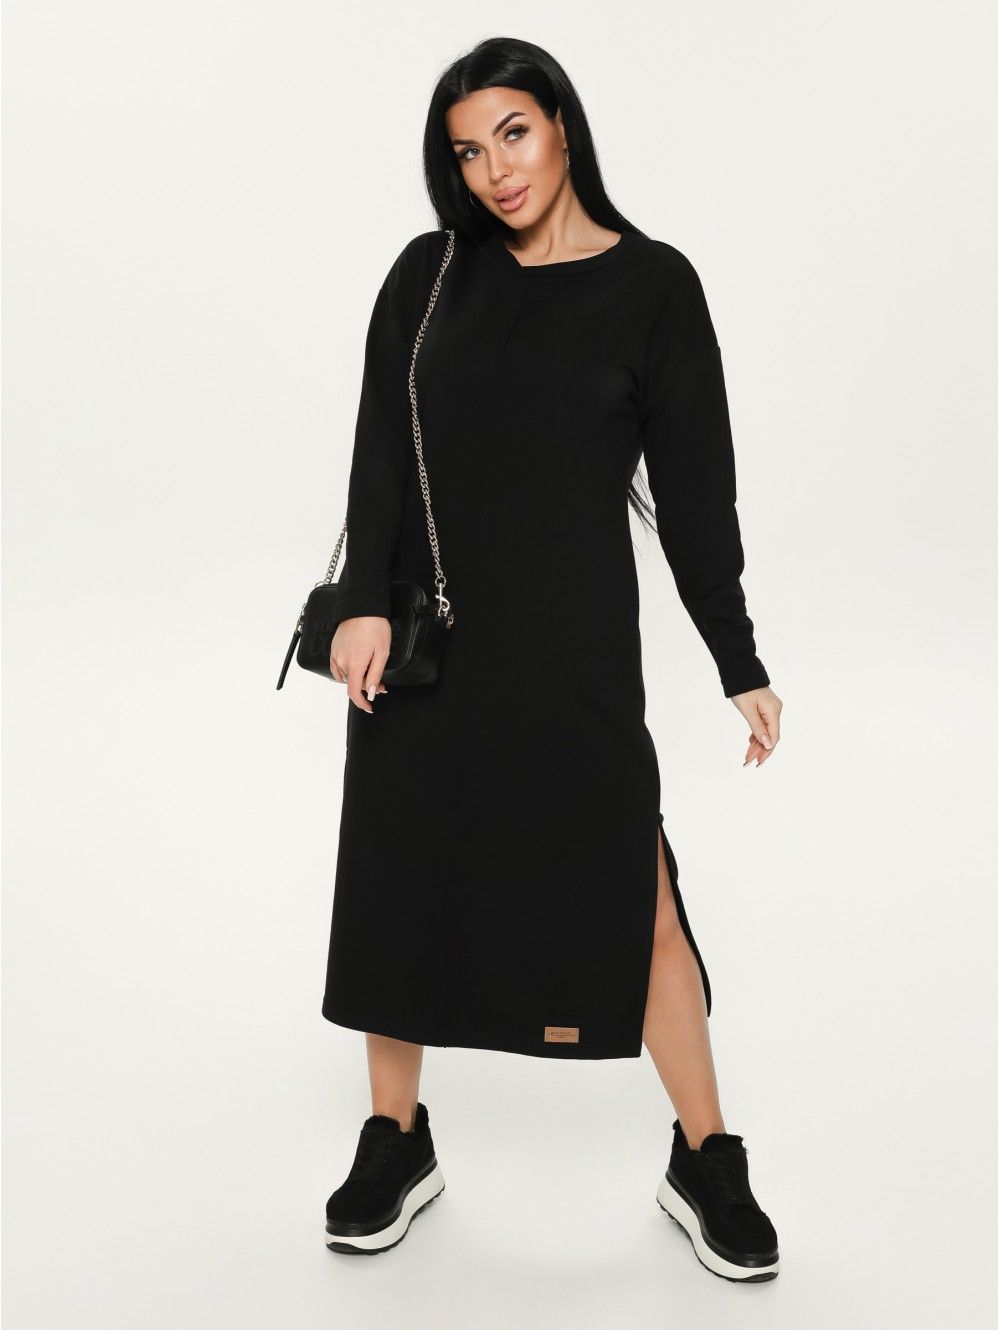 Тайра платье женское (черный)